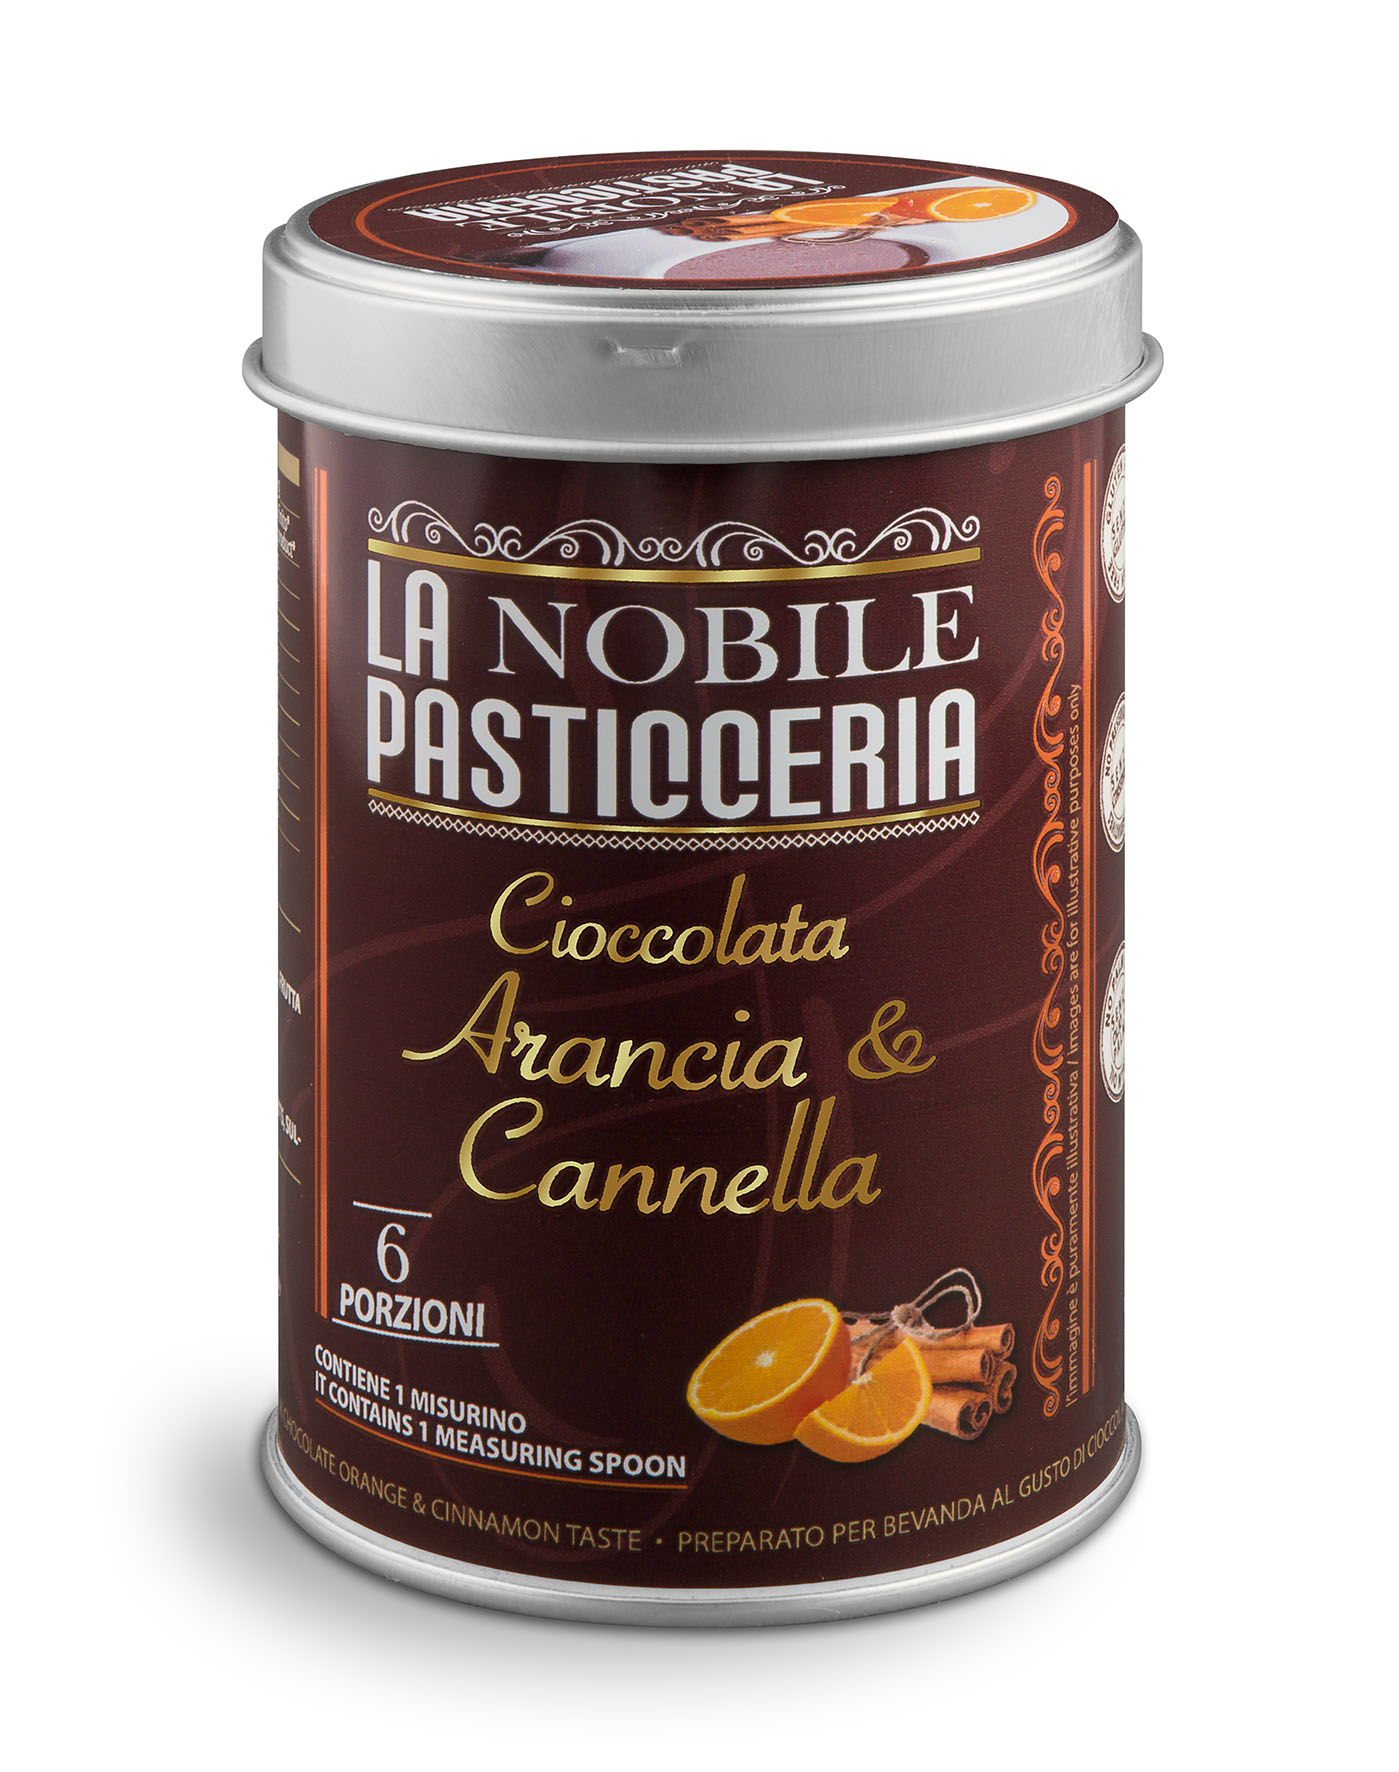 La Nobile Pasticceria - Cioccolata Arancia & Cannella